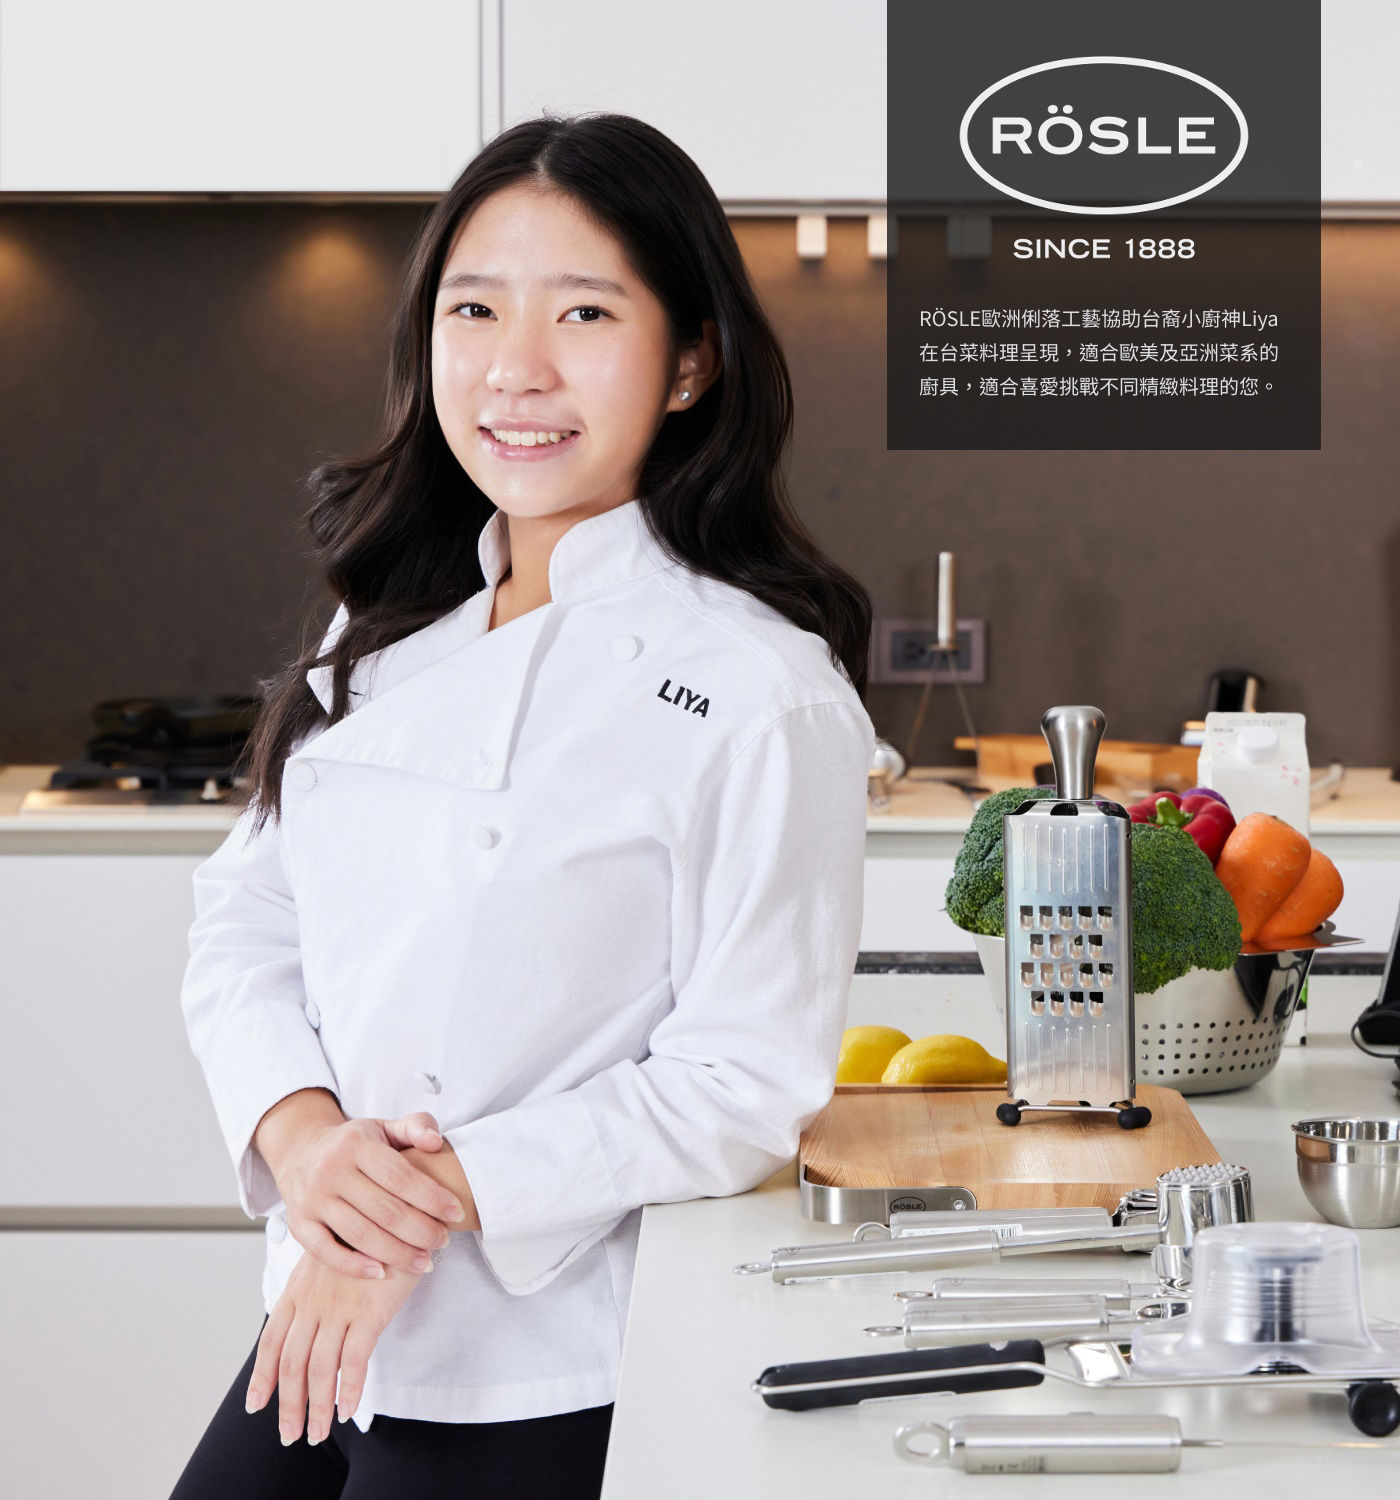 Rosle不鏽鋼沙拉叉匙組RÖSLE歐洲俐落工藝協助台裔小廚神Liya在台菜料理呈現.適合歐美及亞洲菜系的廚具.適合喜愛挑戰不同精緻料理的您